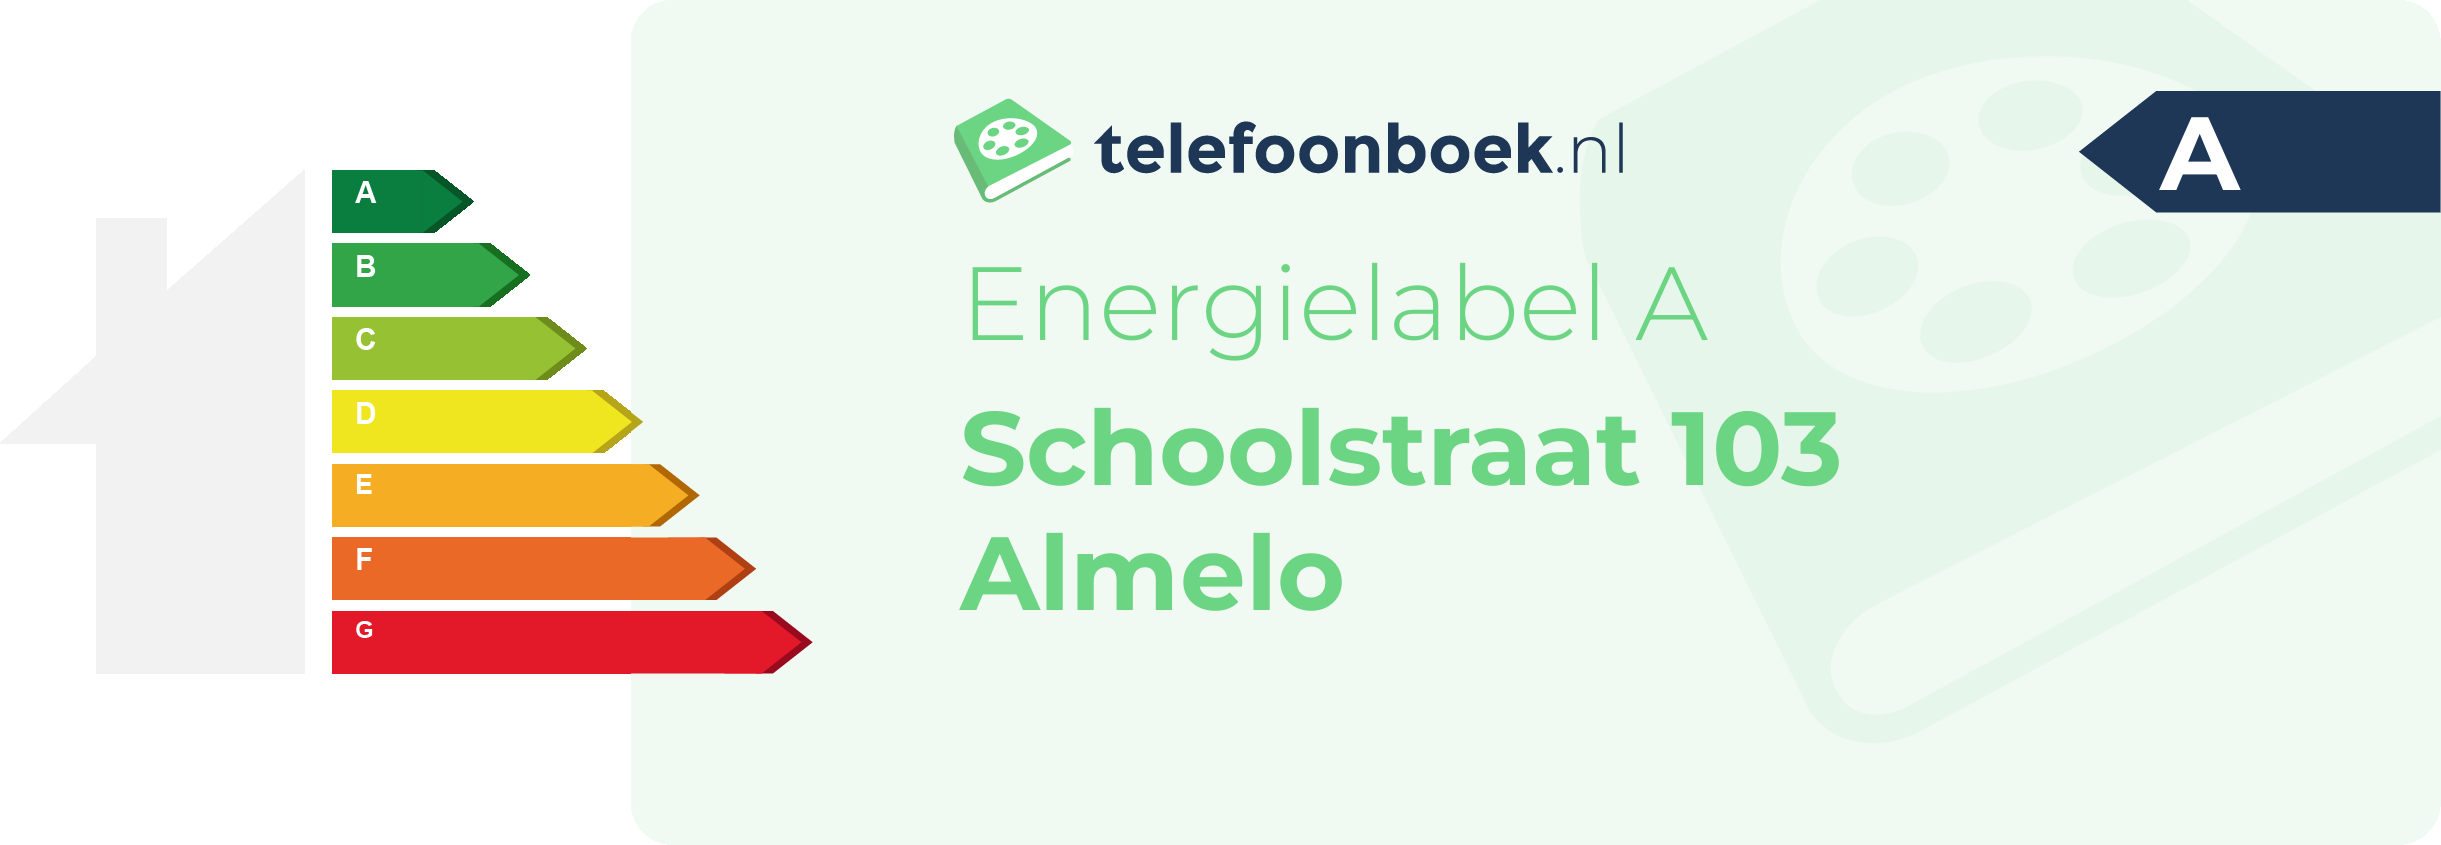 Energielabel Schoolstraat 103 Almelo